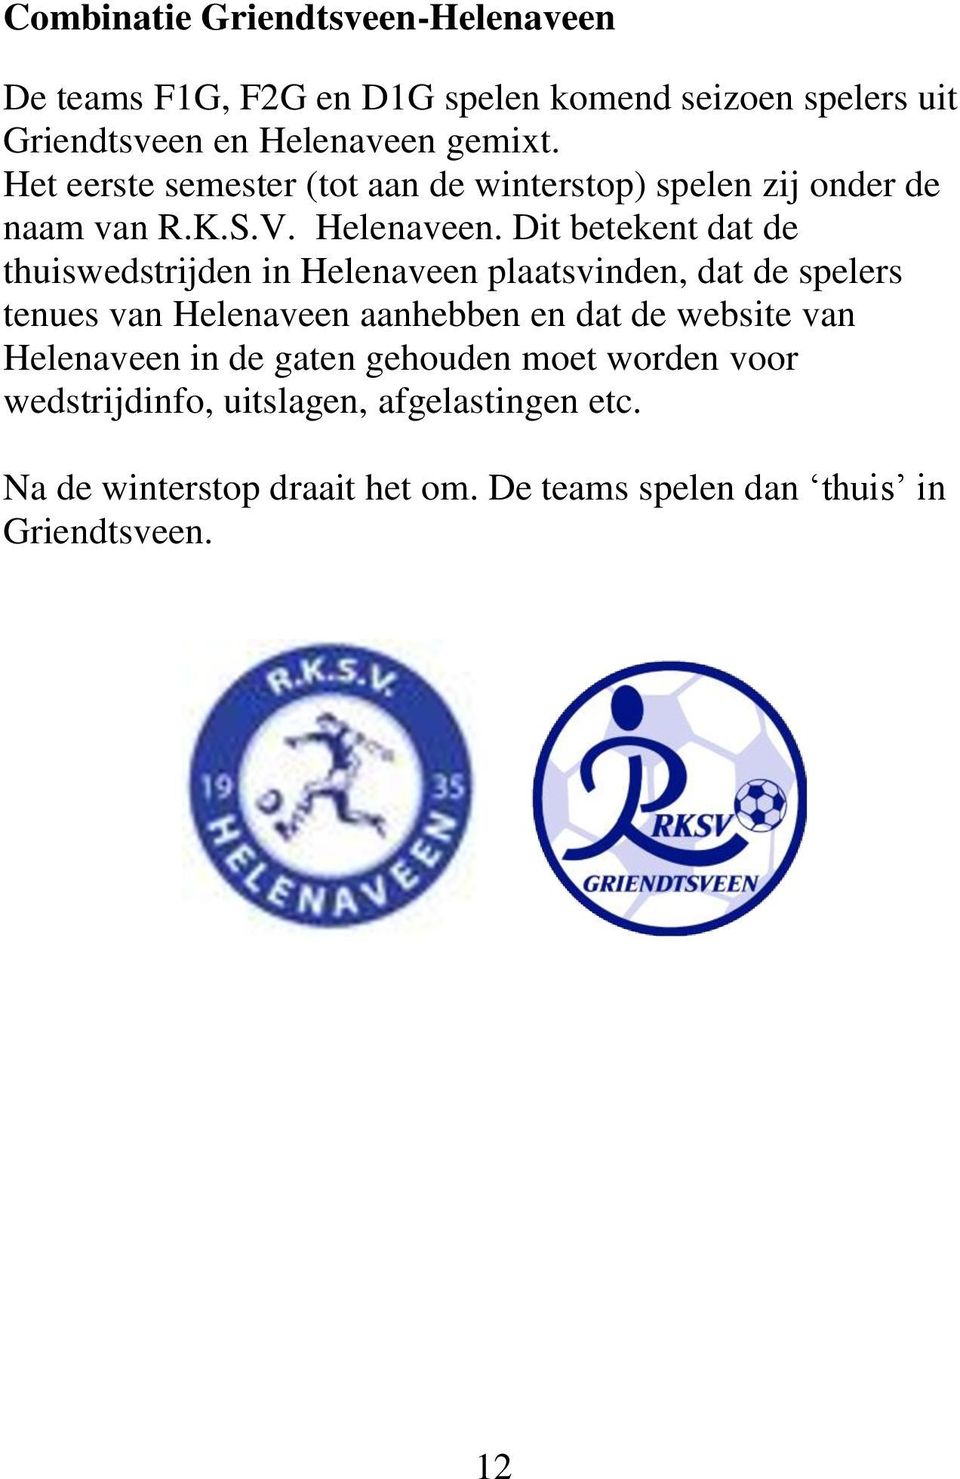 Dit betekent dat de thuiswedstrijden in Helenaveen plaatsvinden, dat de spelers tenues van Helenaveen aanhebben en dat de website